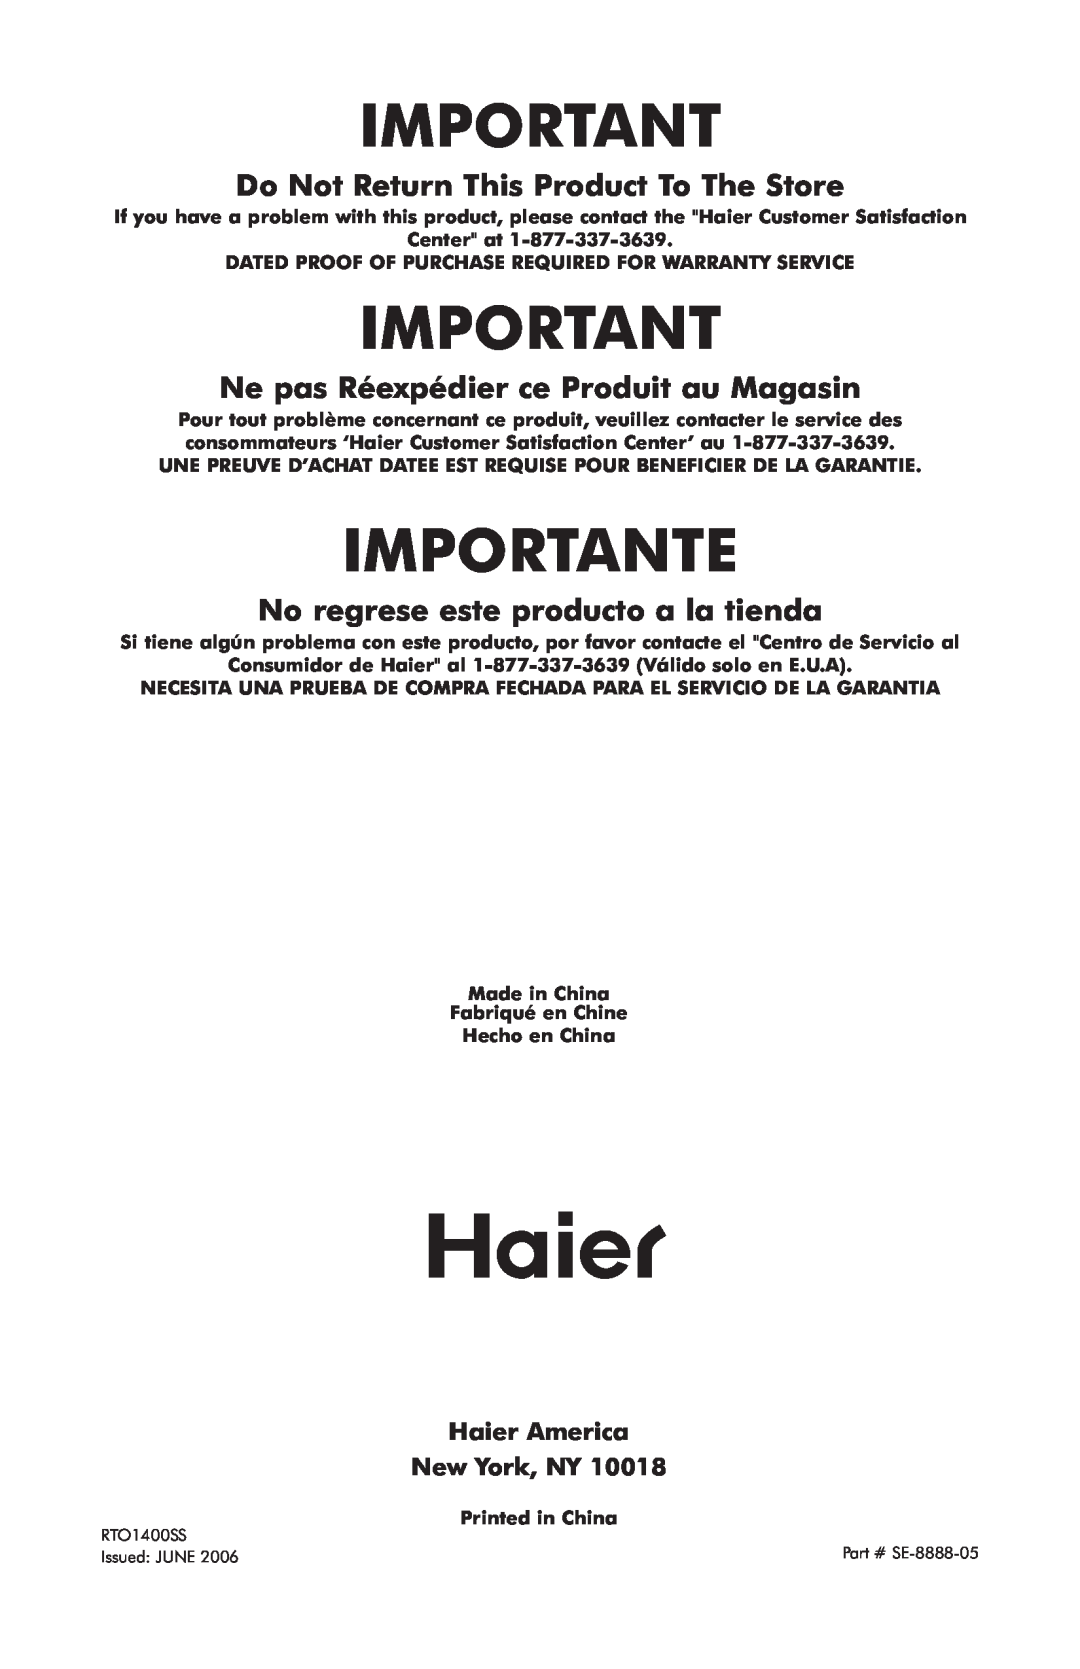 Haier RTO1400SS user manual Importante, Do Not Return This Product To The Store, Ne pas Réexpédier ce Produit au Magasin 